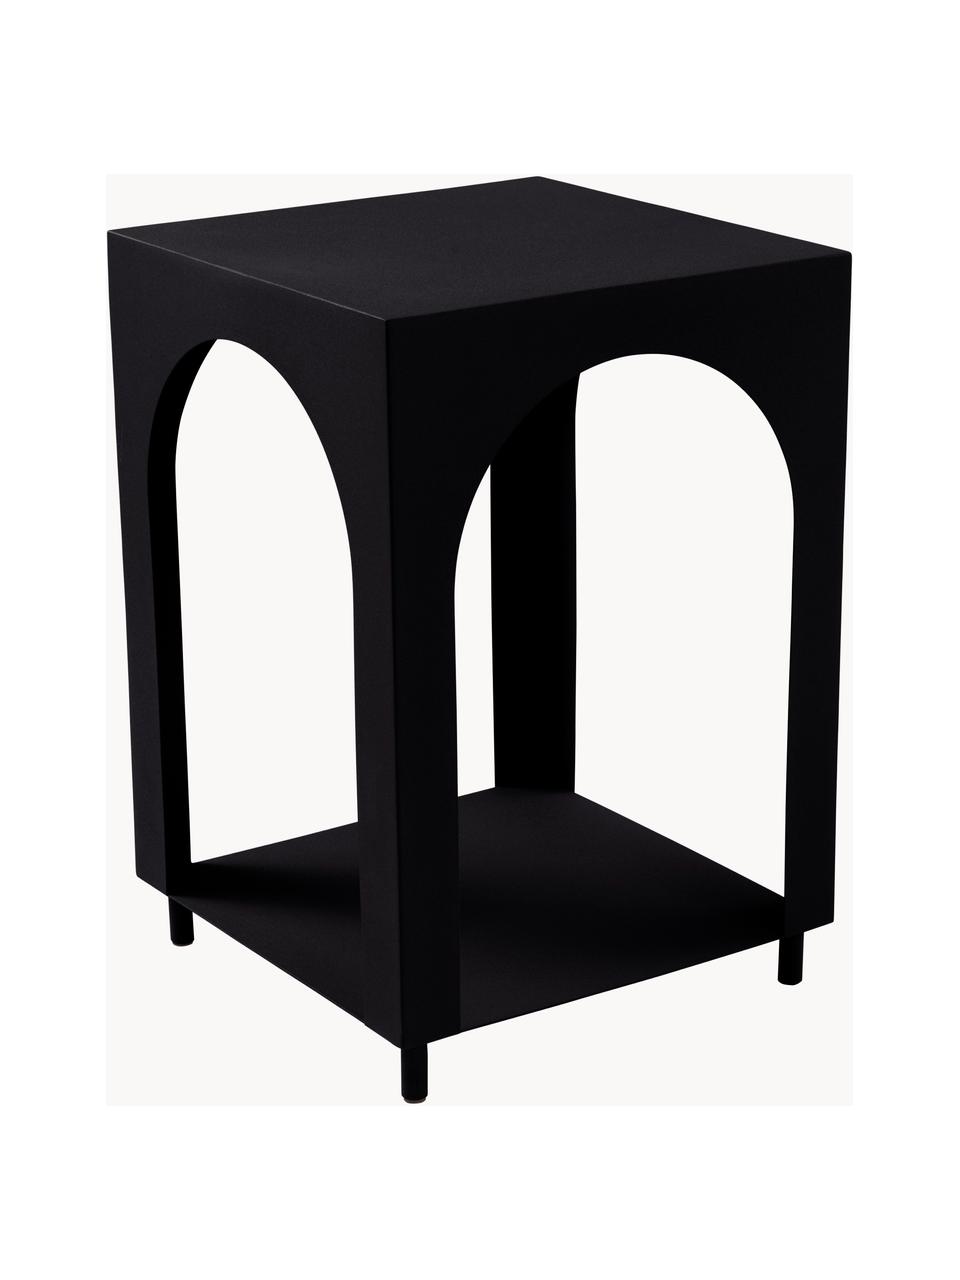 Odkladací stolík s dodatočným odkladacím priestorom Vesta, MDF-doska strednej hustoty, jaseňová dyha, Drevo, čierna lakovaná, Š 40 x V 59 cm